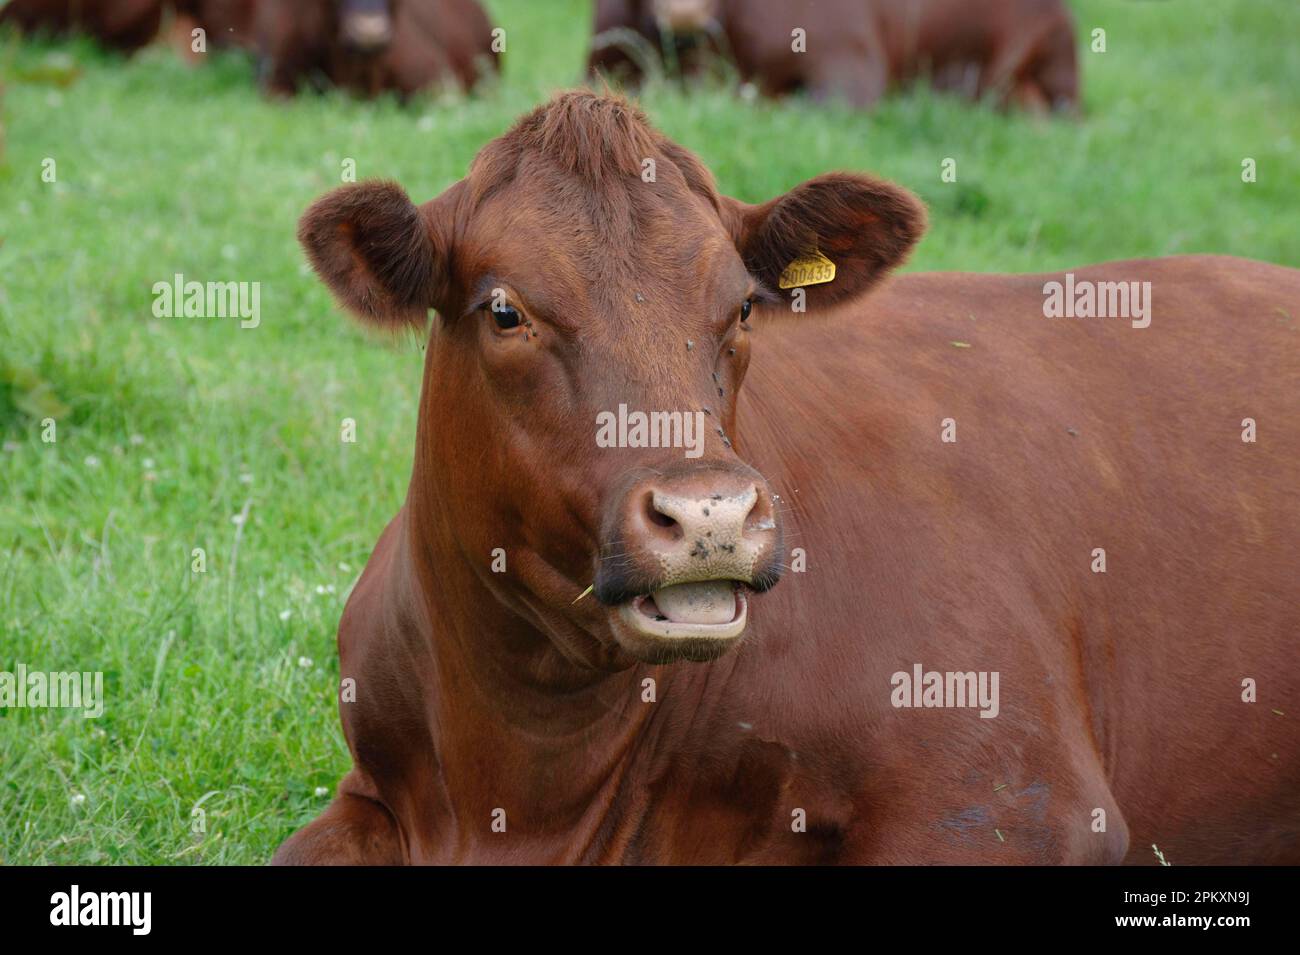 Bovins domestiques, vache Sussex, gros plan de la tête, ruminants, mastiquer cud, Angleterre, Royaume-Uni Banque D'Images